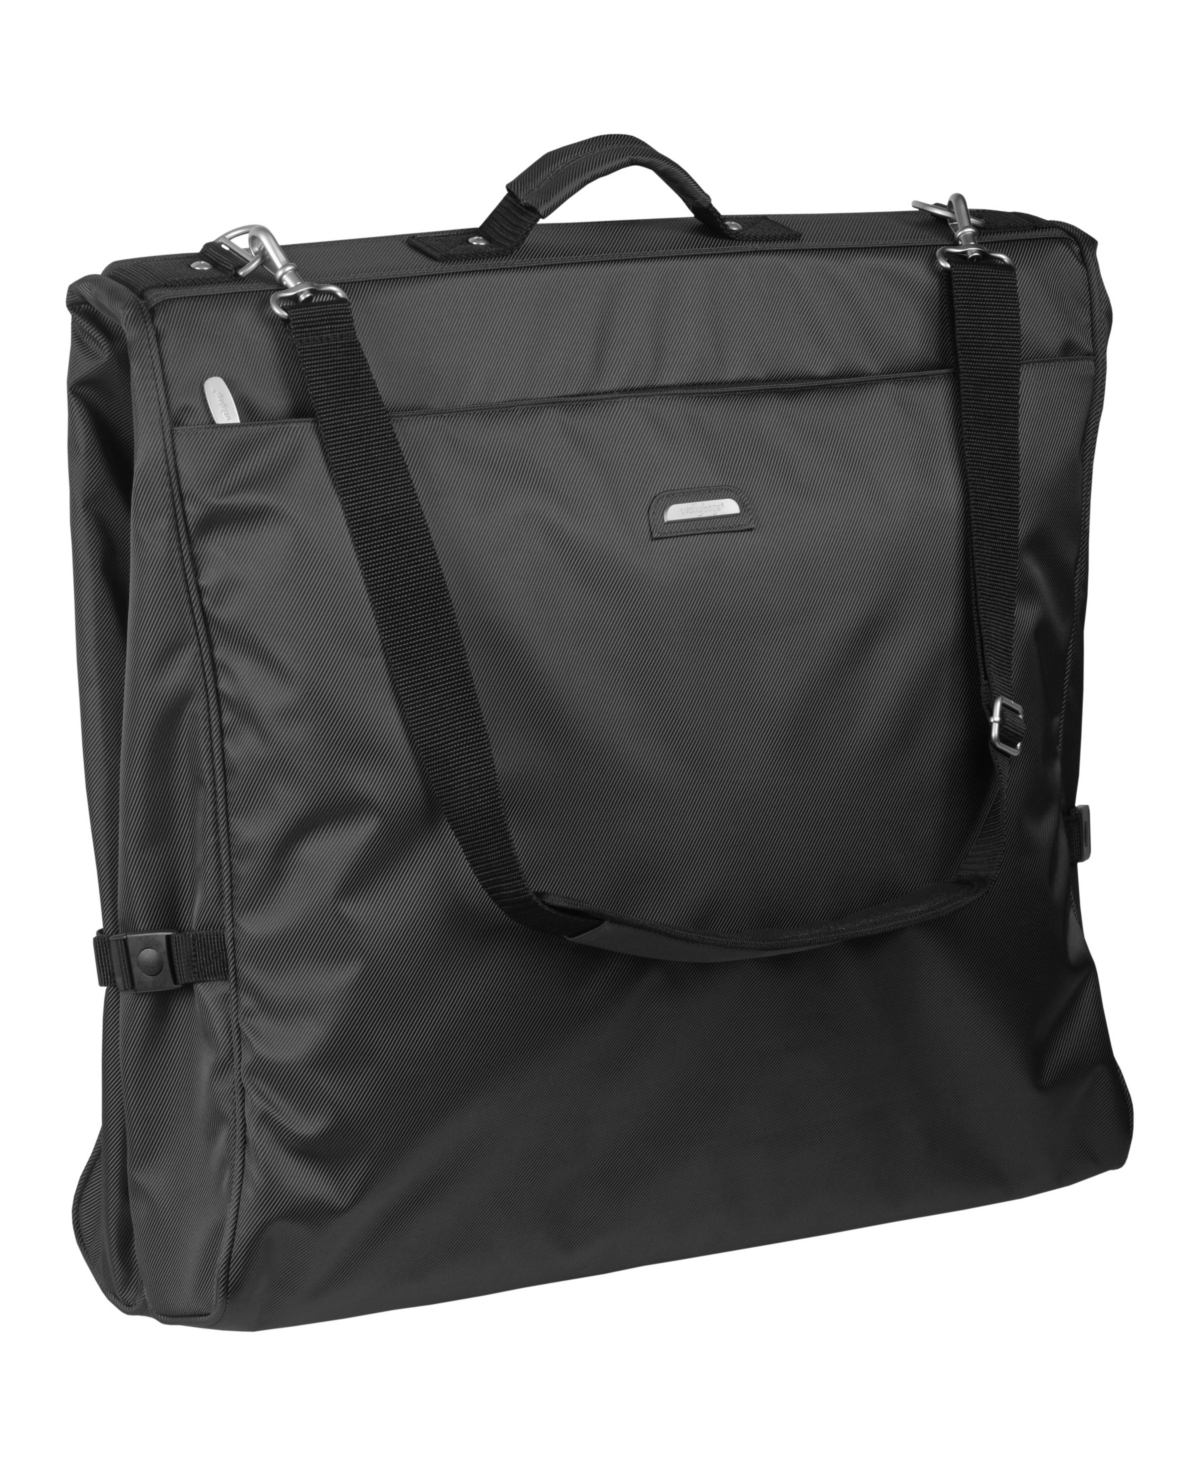 45" Premium Framed Travel Garment Bag with Shoulder Strap and Pockets - Black